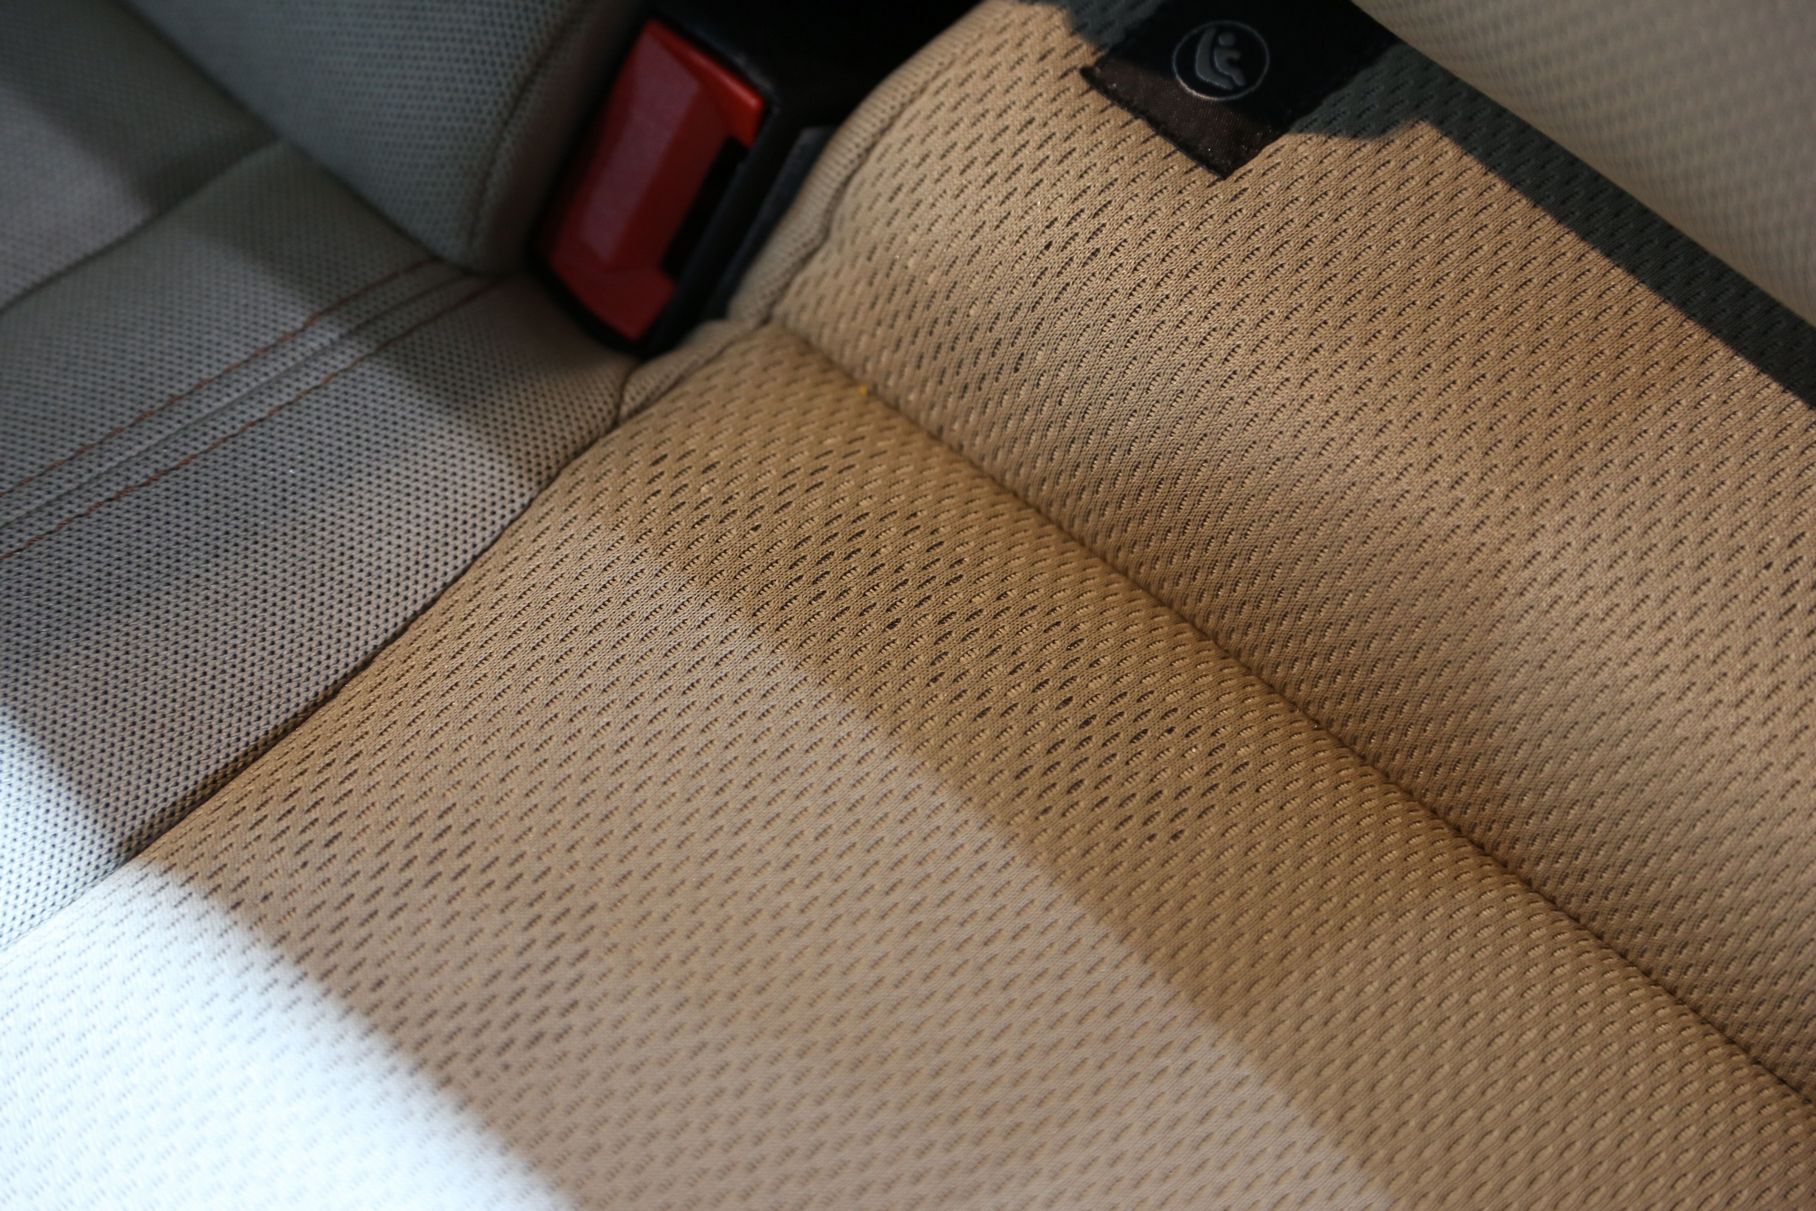 Хотя мне больше всего понравились логотипы Jeep на сиденьях... под тканевой обивкой — их можно разглядеть, когда свет определённым образом падает на кресло.